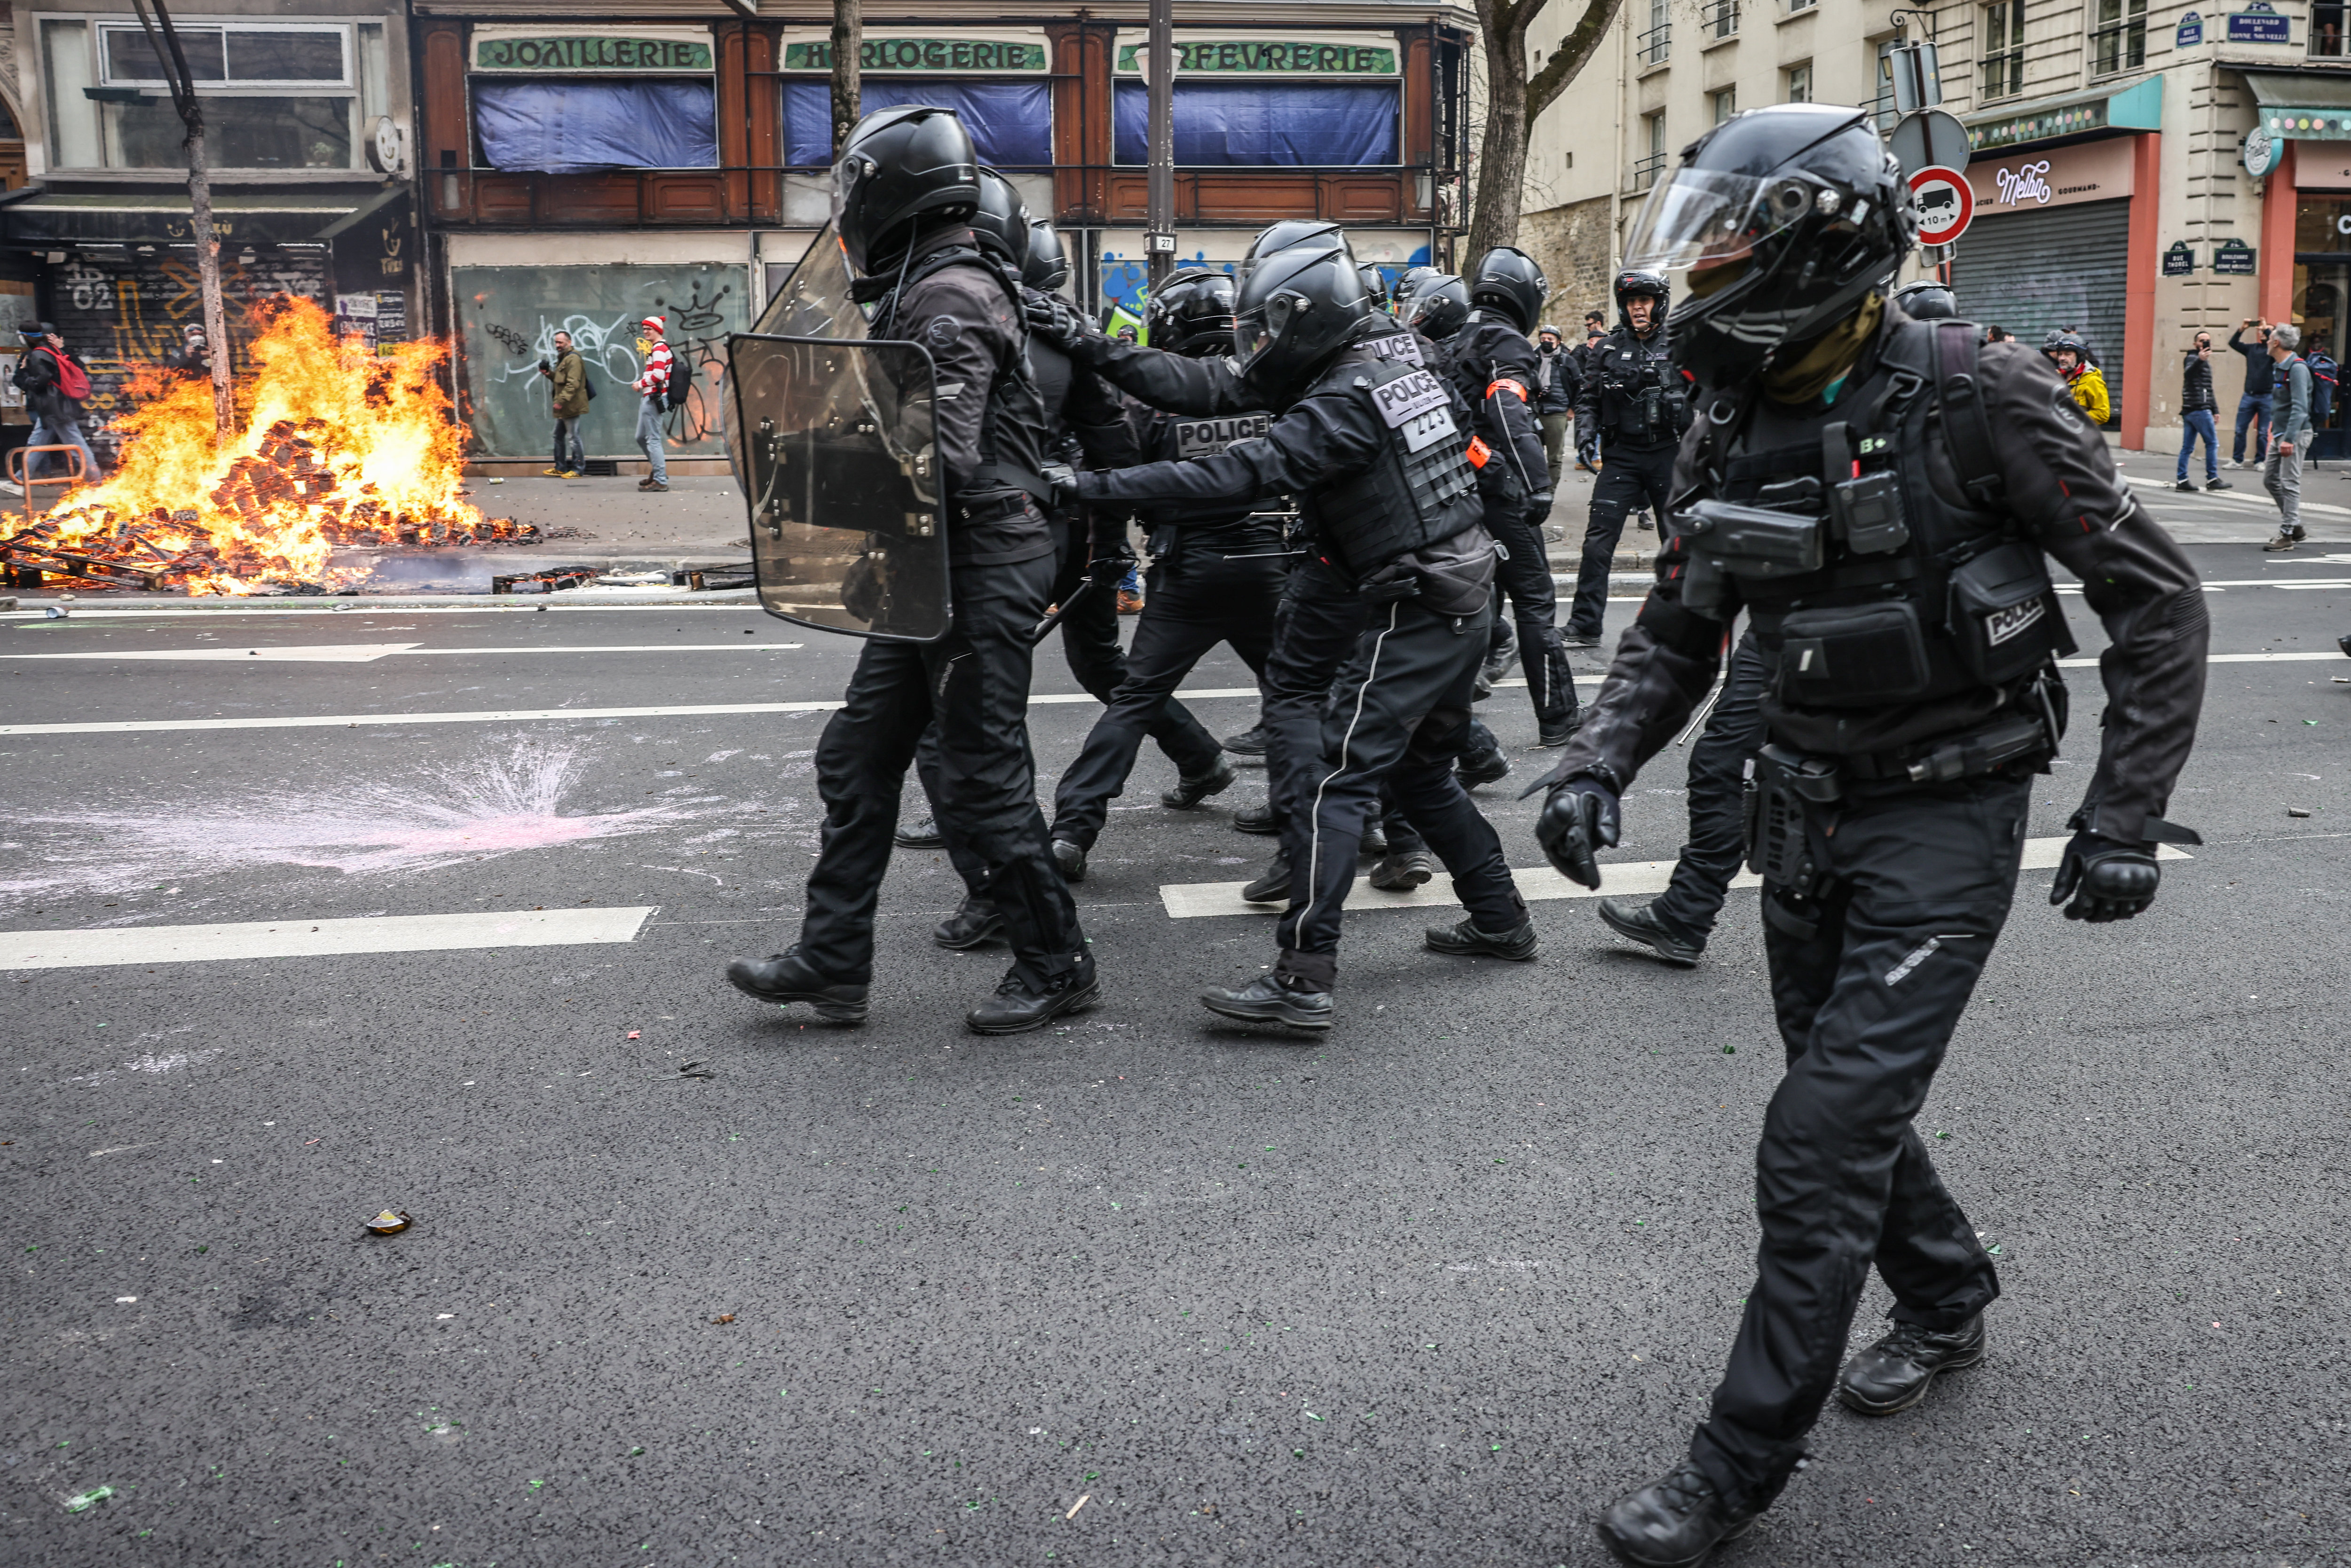 Les policiers de la Brav-M (brigade de répression de l’action violente motorisée) avancent casqués et armés, comme ici à Paris, le 23 mars dernier. LP/Fred Dugit